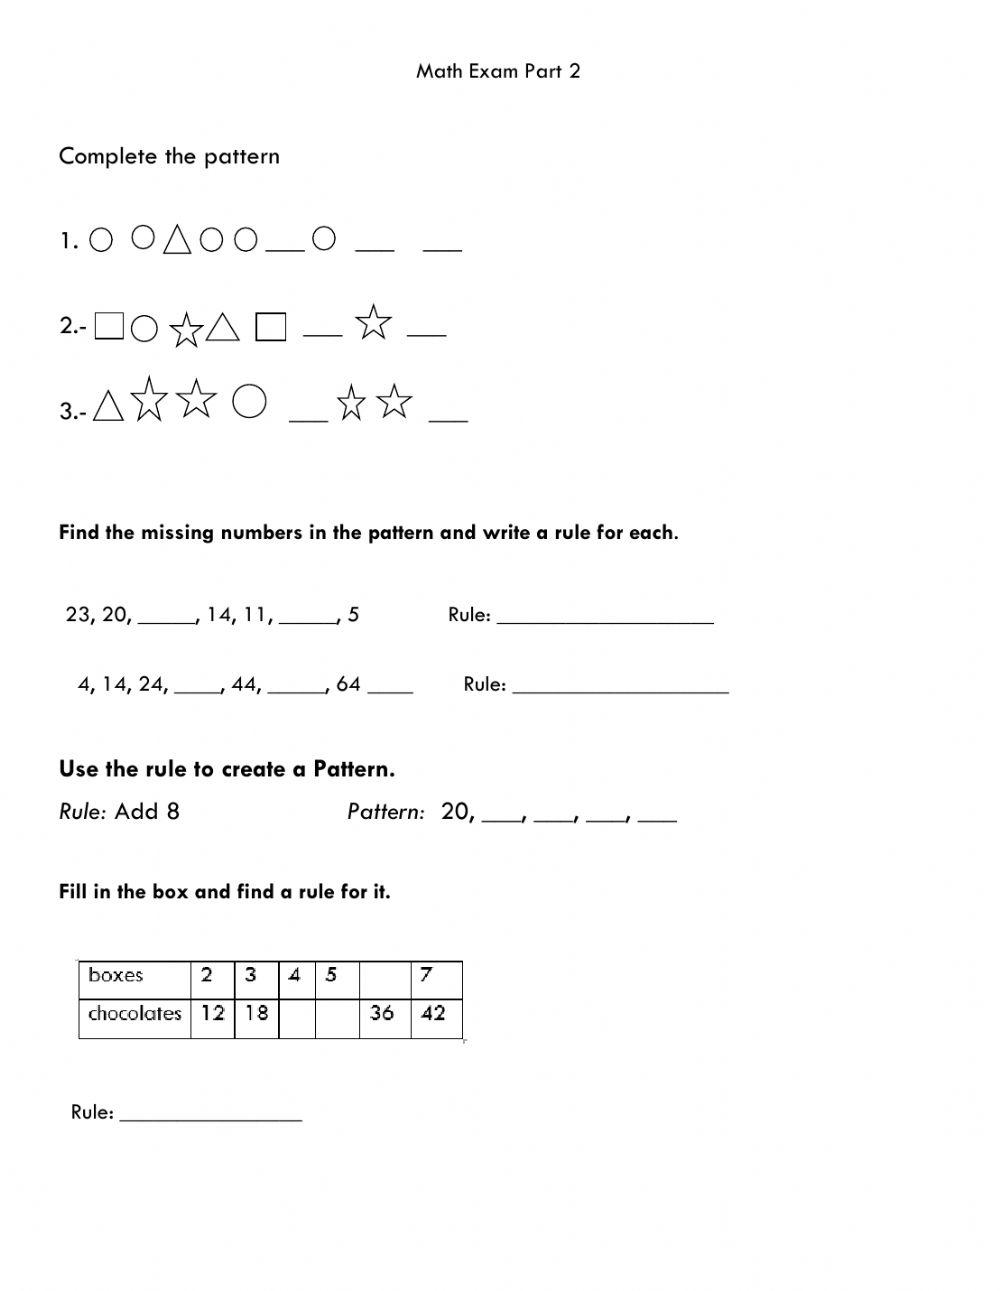 Math exam part 2